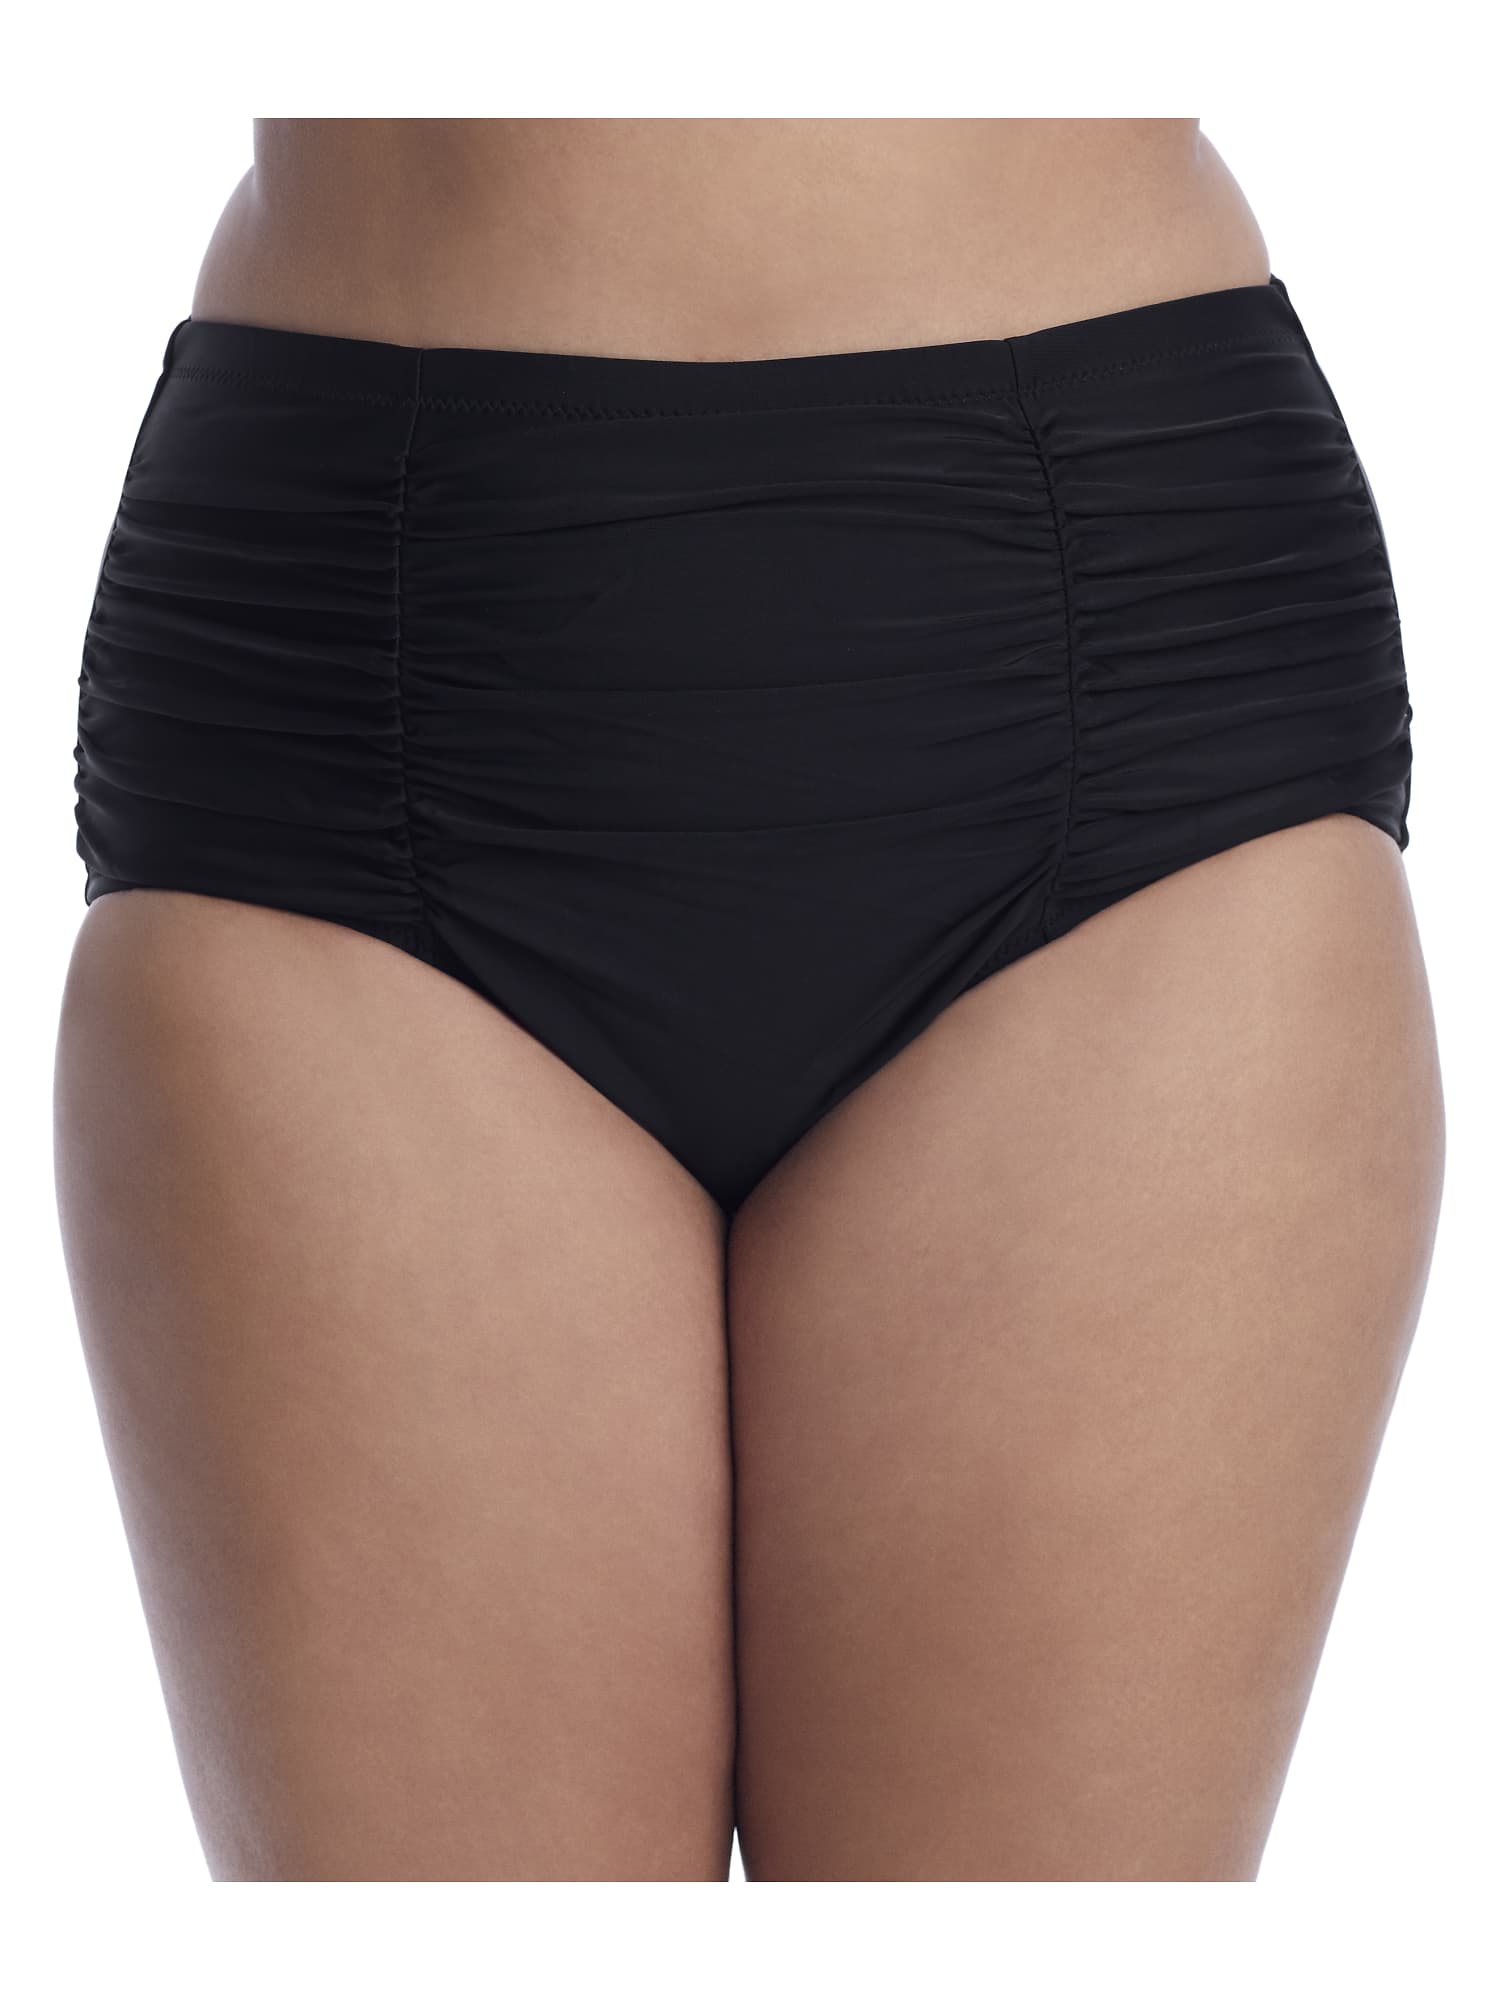 Raisins Curve Women's Black Costa Pant Swimsuit Bottoms High Waist Plus Size